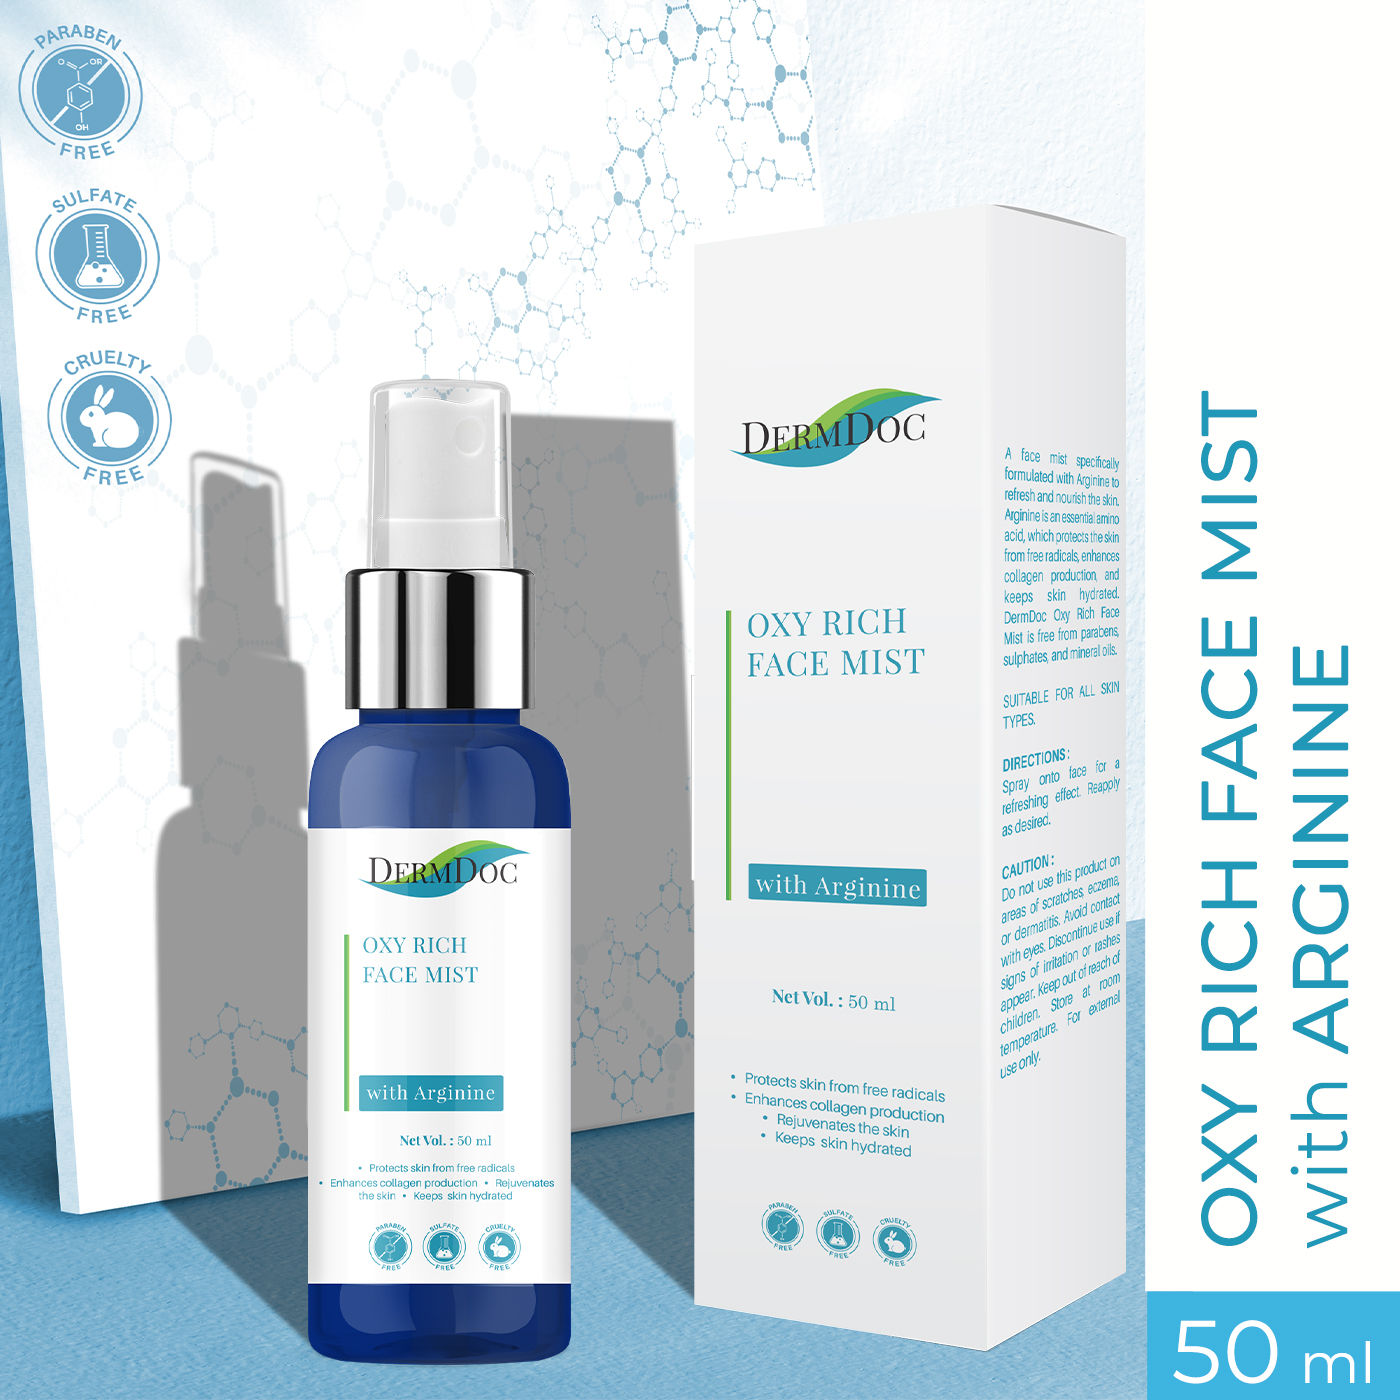 Buy DermDoc Oxy Rich Face Mist with Arginine (50 ml) - Purplle